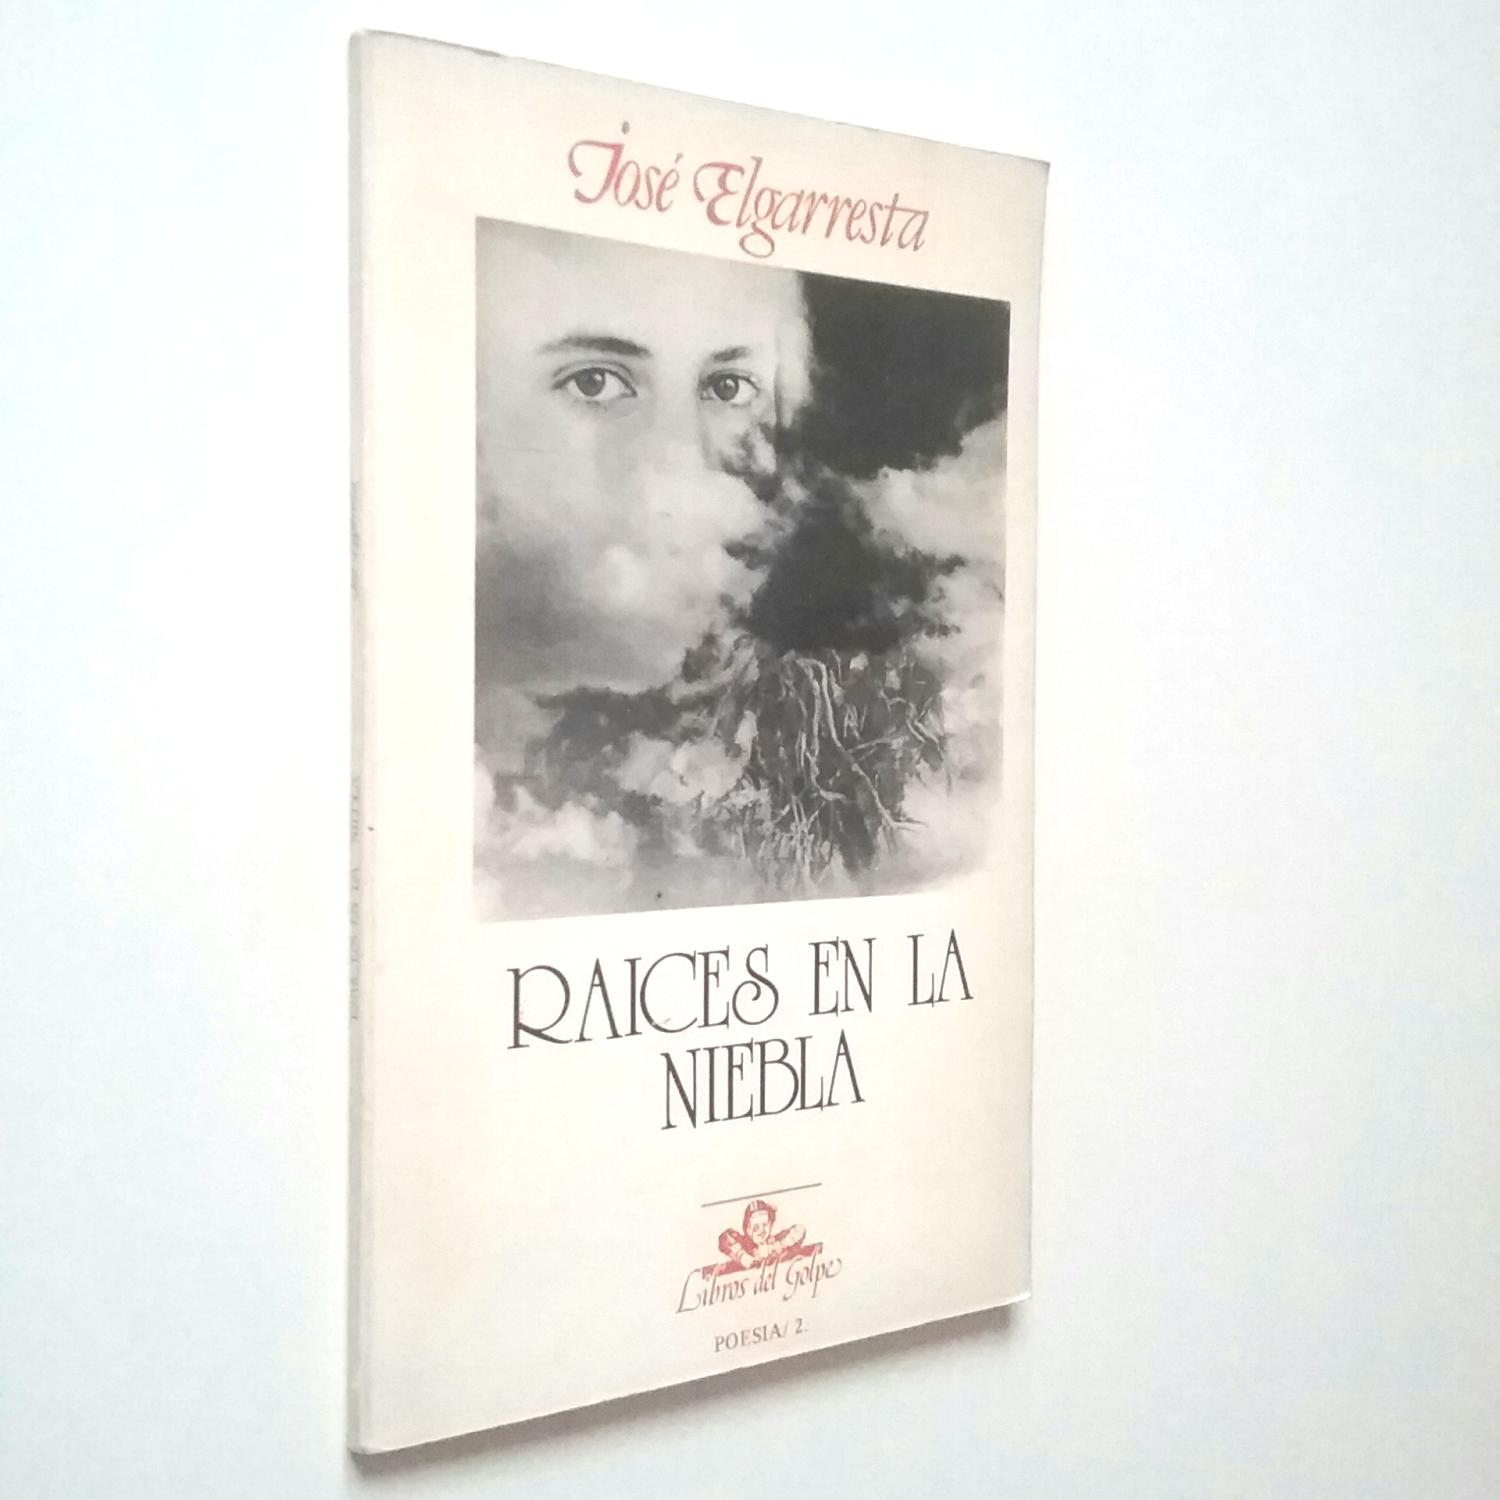 Raíces en la niebla (Primera edición) - José Elgarresta